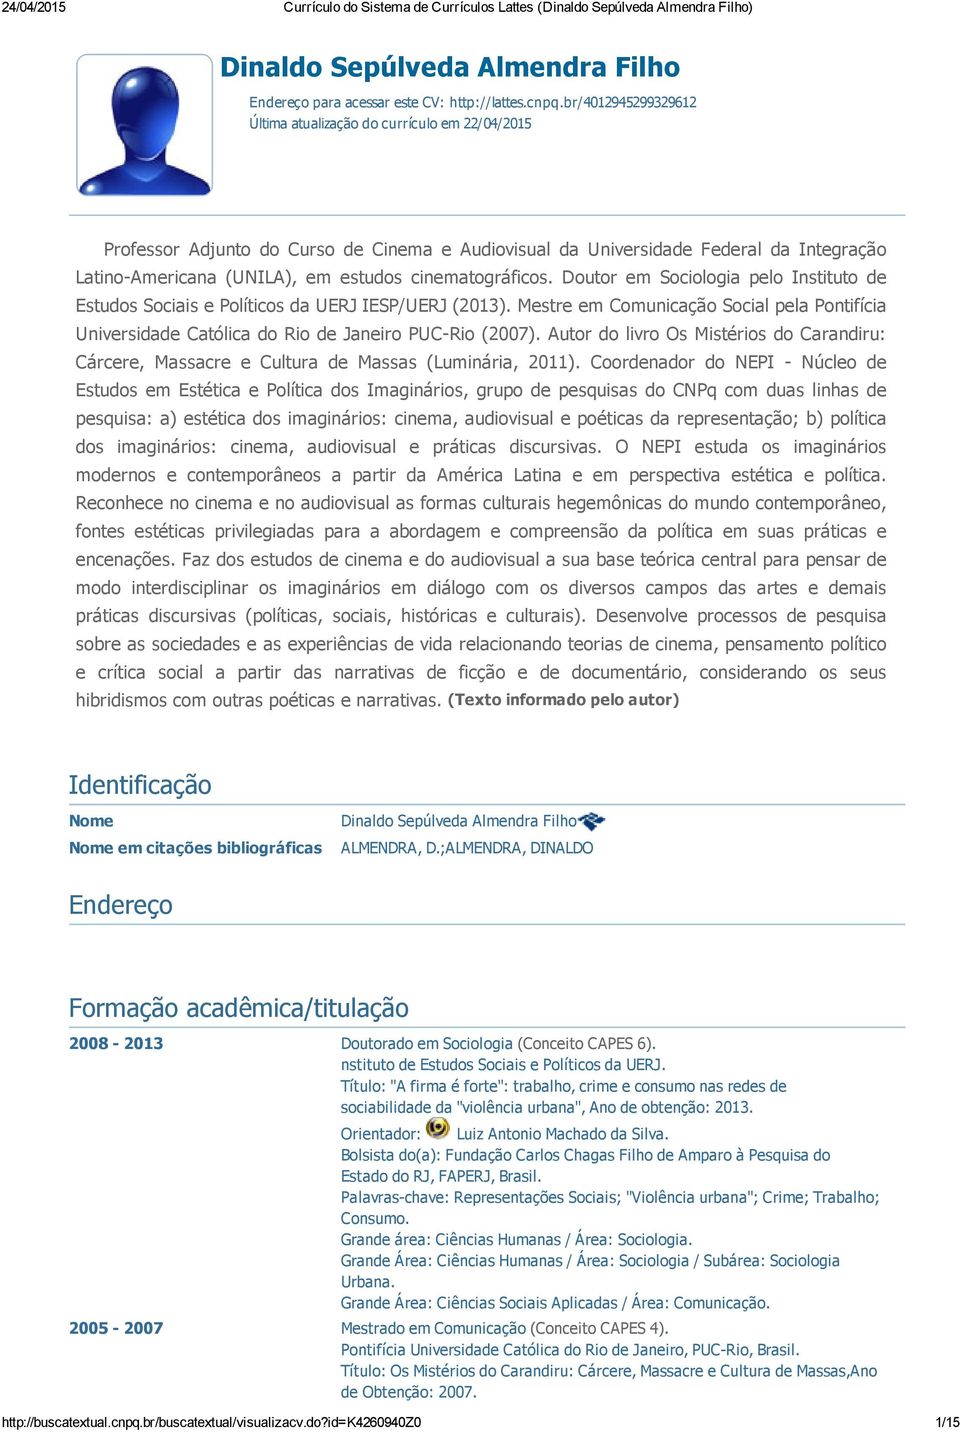 cinematográficos. Doutor em Sociologia pelo Instituto de Estudos Sociais e Políticos da UERJ IESP/UERJ (2013).